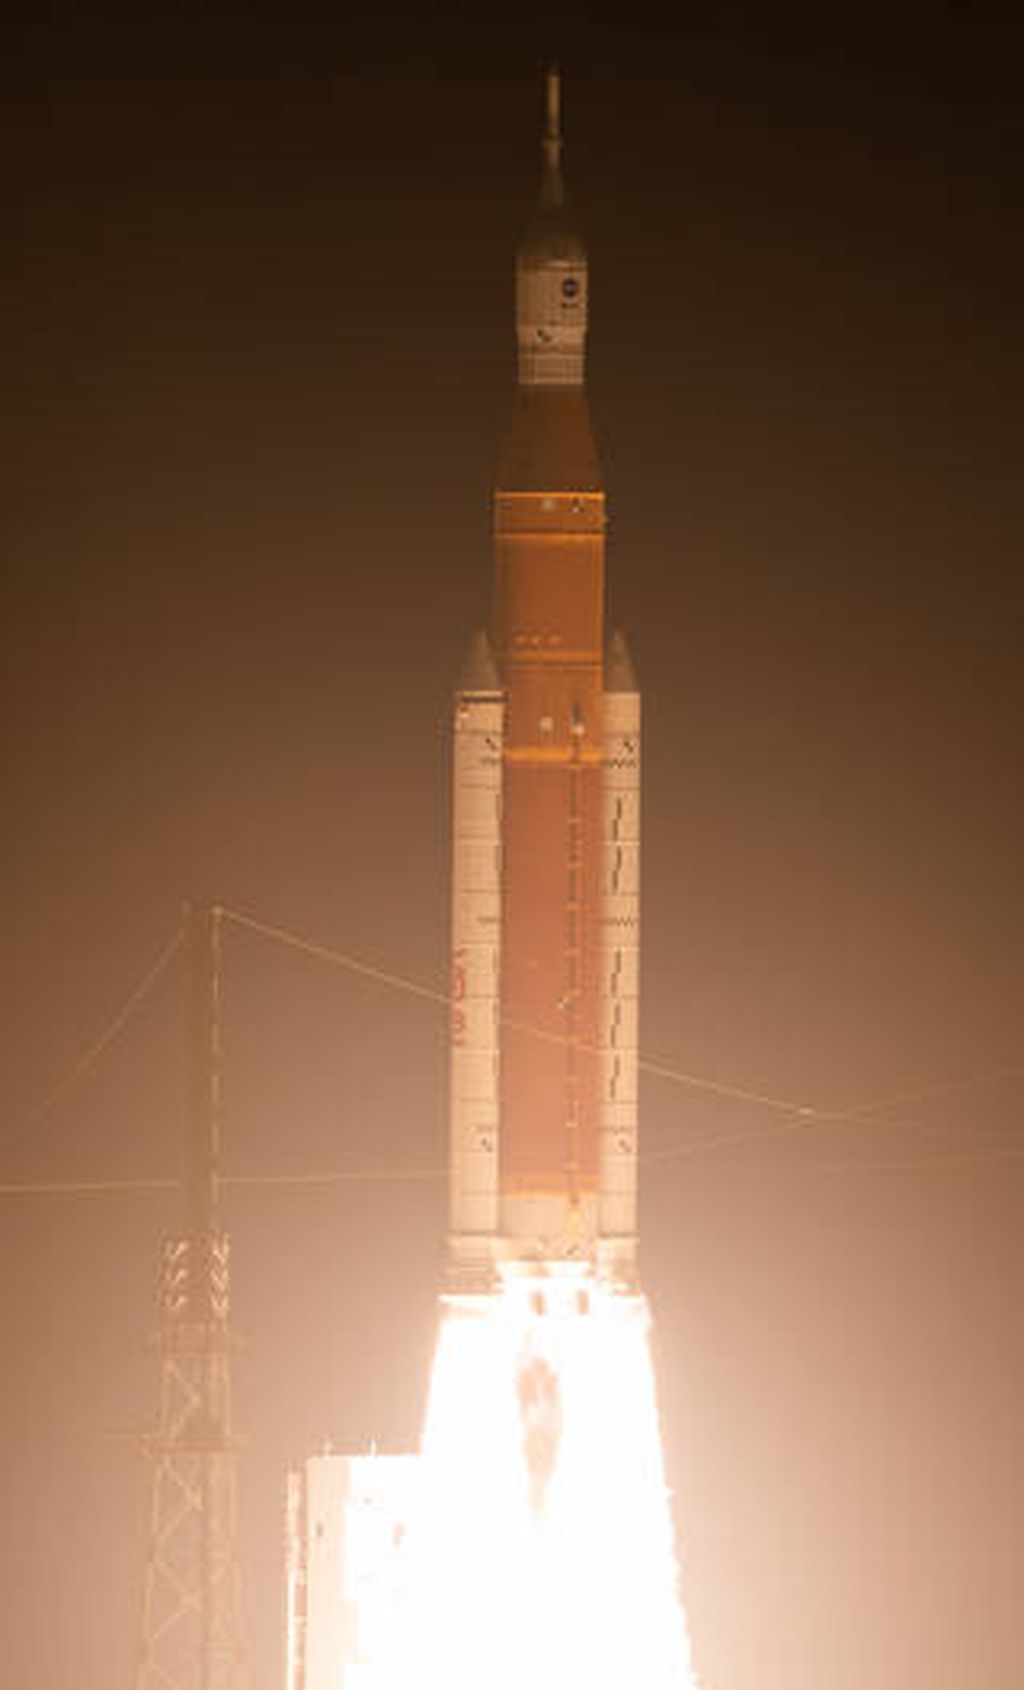 Roket Sistem Peluncuran Luar Angkasa (SLS) yang membawa wahana antariksa Orion dalam misi Artemis 1 meluncur dari Bandar Antariksa Kennedy, AS, pada Rabu, 16 November 2022. Misi Artemis 1 ini untuk menguji apakah SLS dan Orion siap digunakan untuk mengirimkan antariksawan pergi ke Bulan dan membawa mereka kembali ke Bumi.